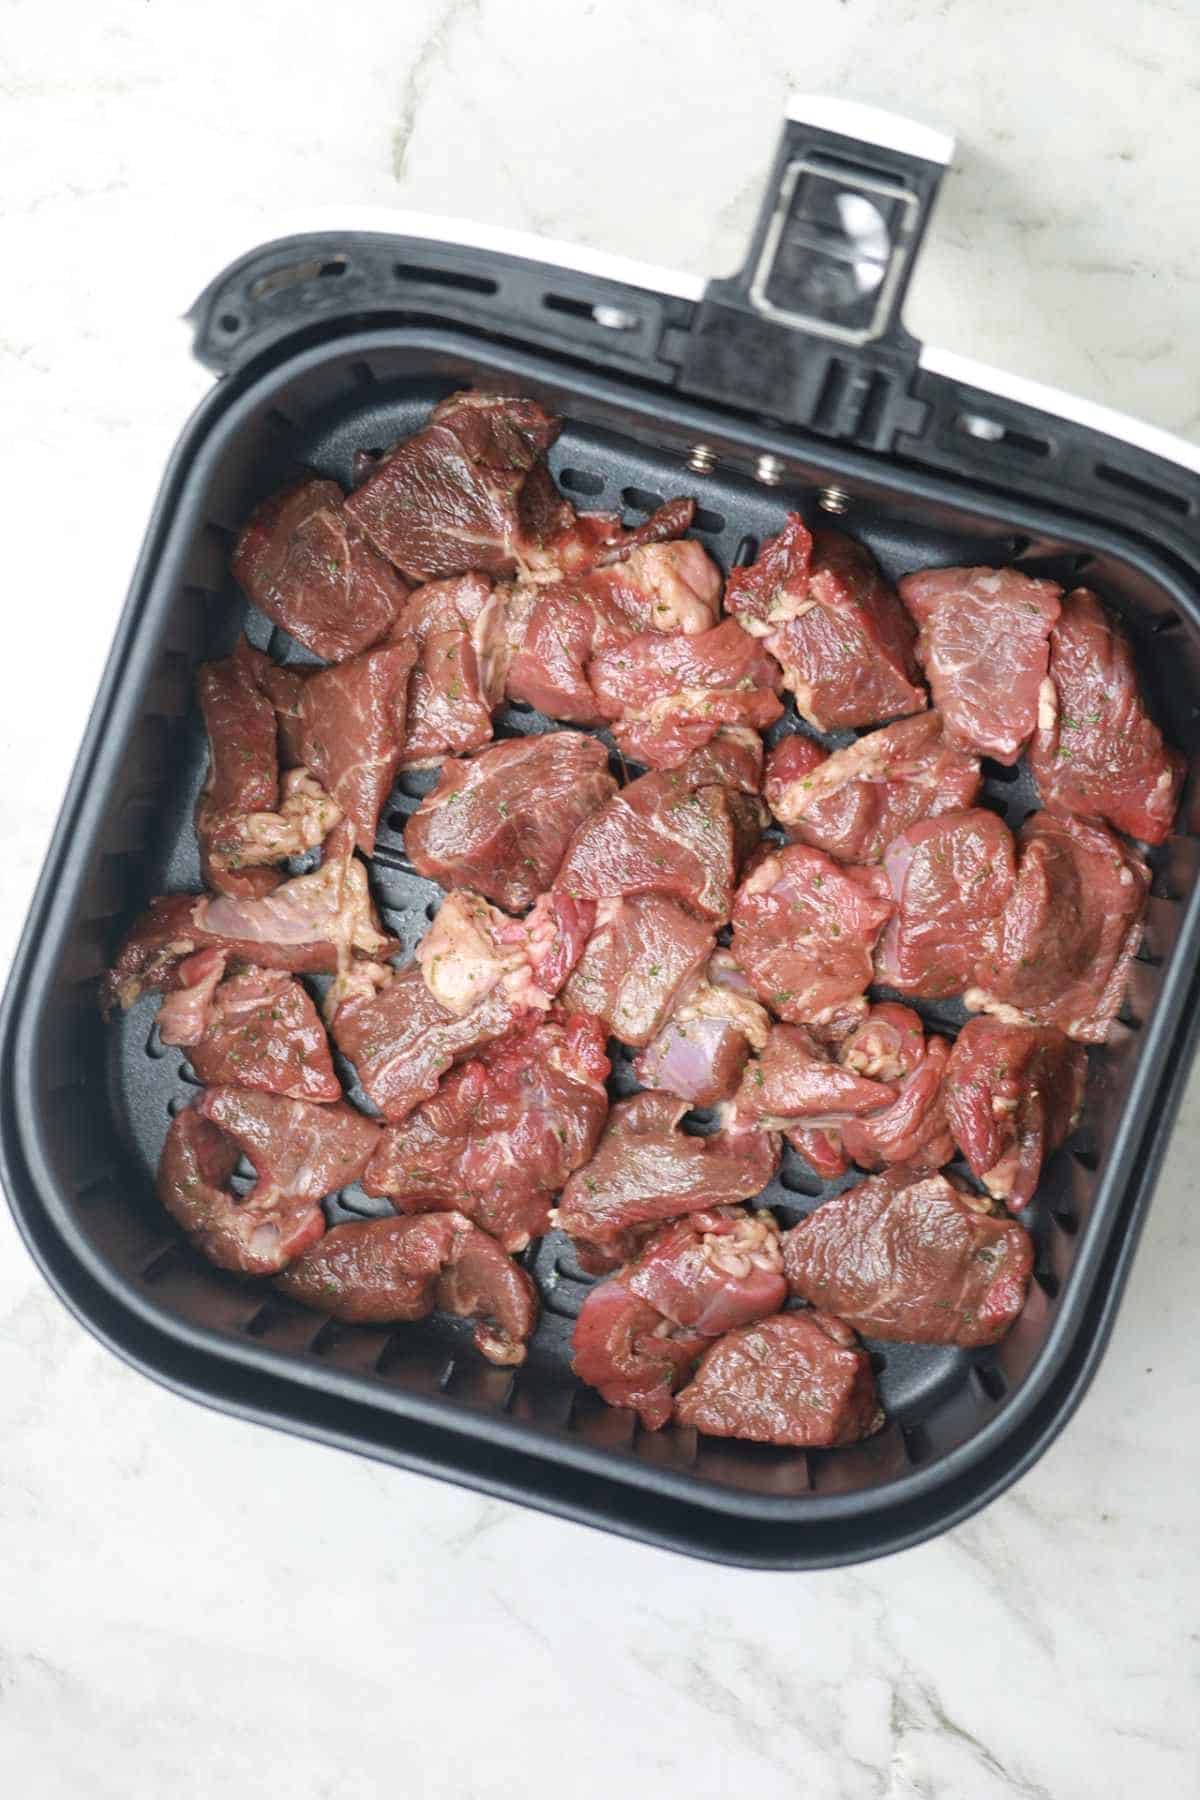 steak bites arranged in air fryer.